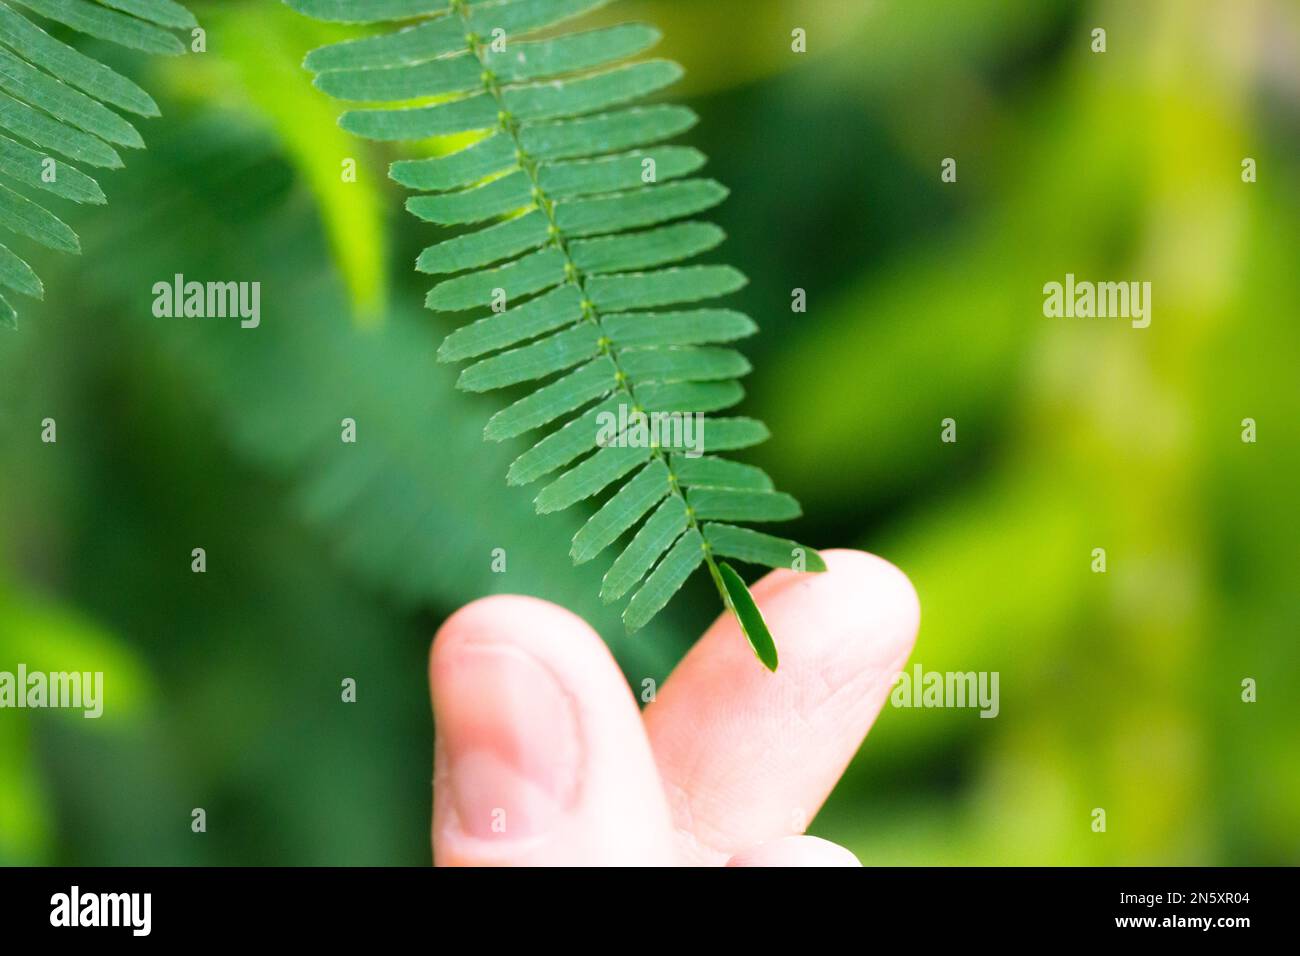 Toucher les feuilles vertes de Mimosa pudica par les doigts de la main humaine provoquant la fermeture de la feuille. Plante timide appelée sensible, somnolent, plante d'action, toucher-me-pas, honte Banque D'Images